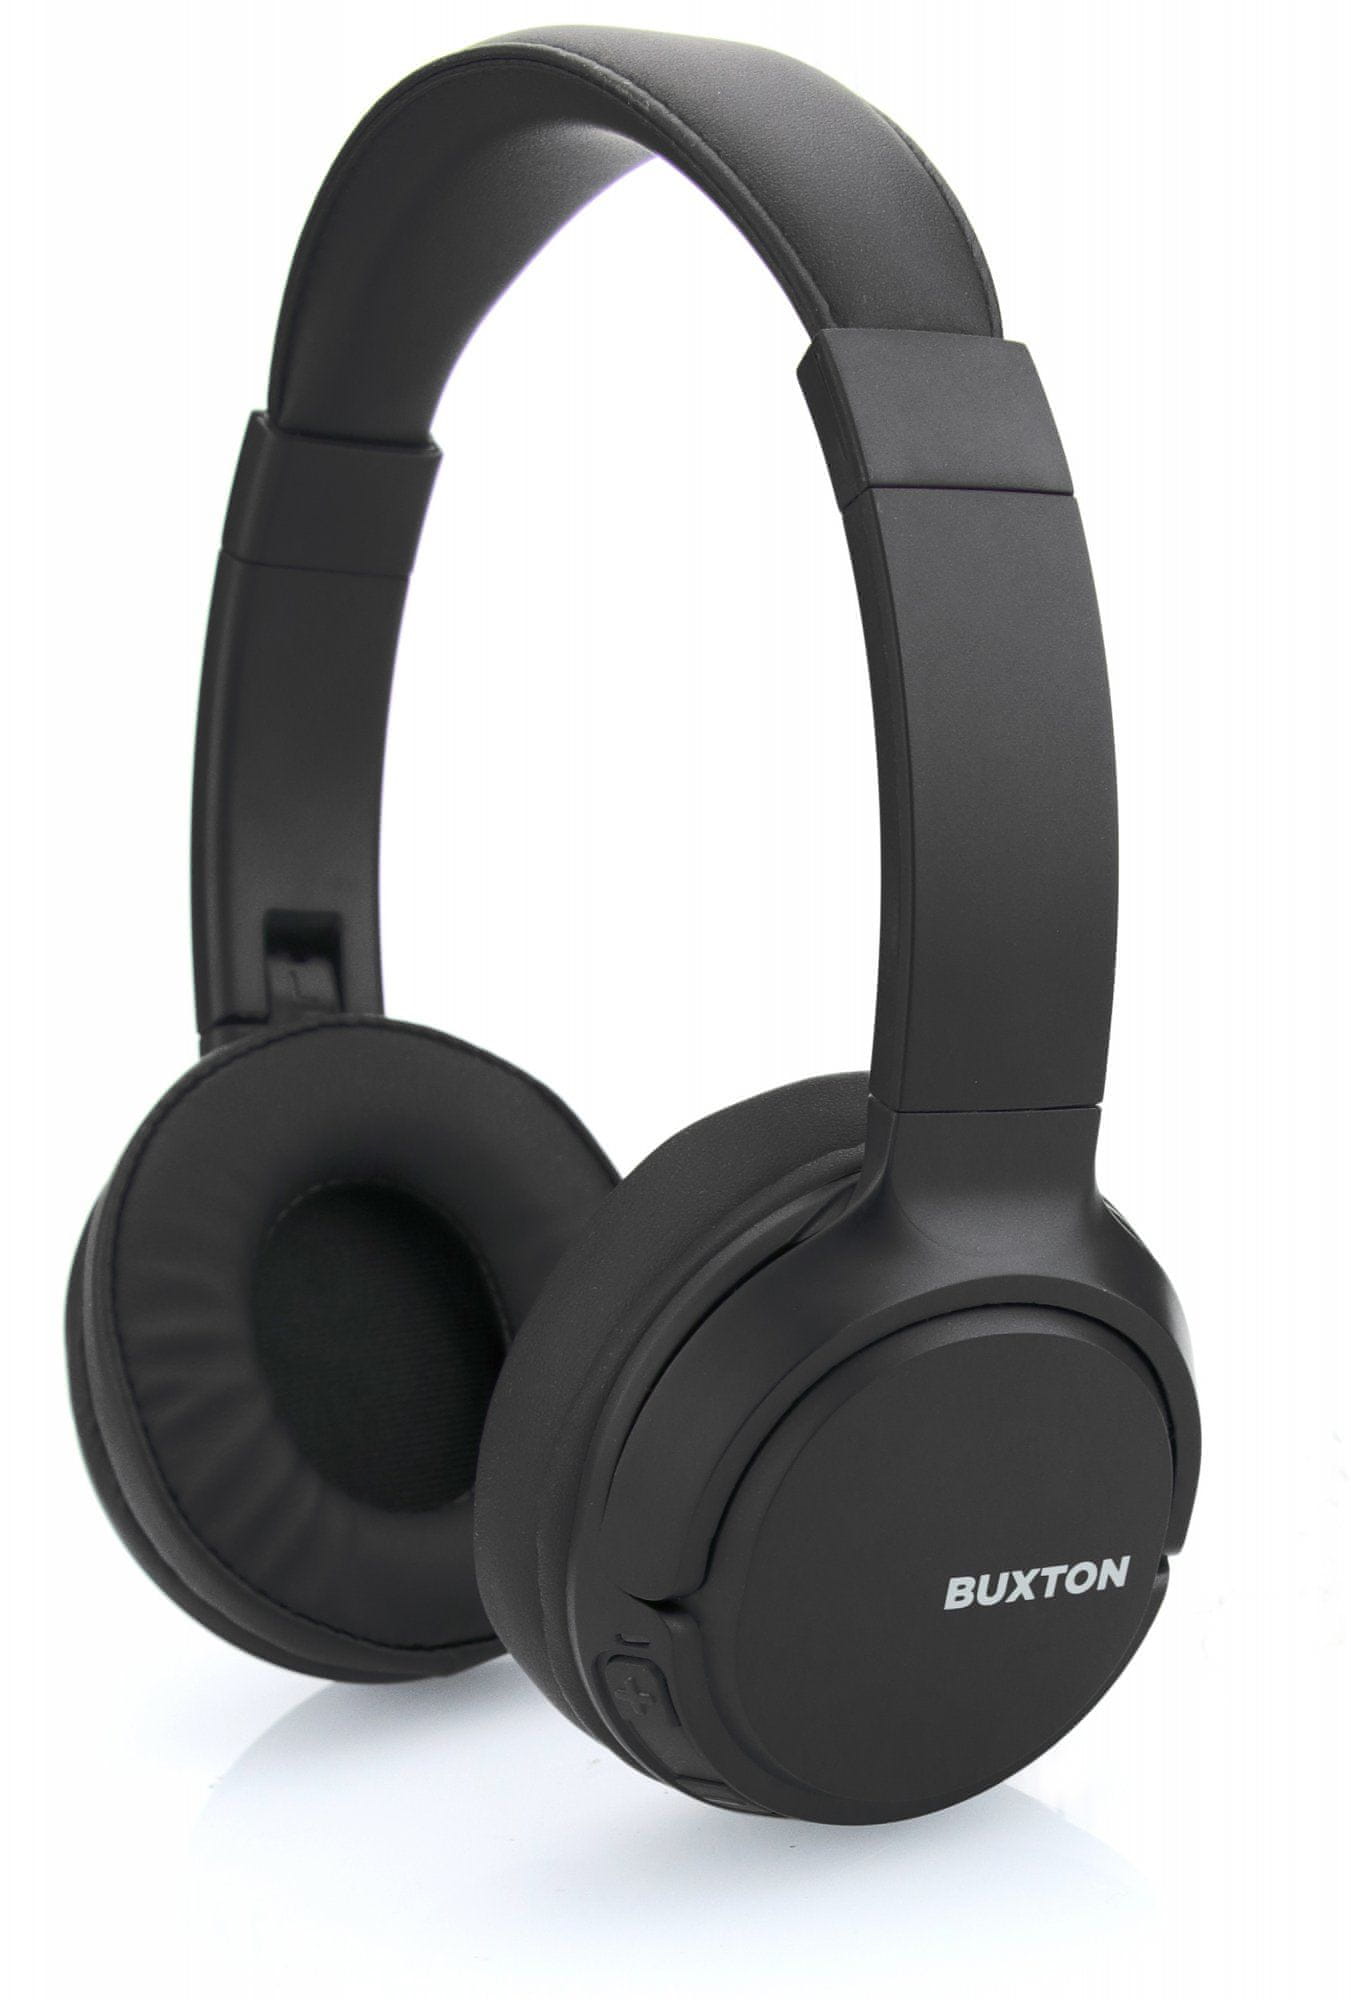  moderna bežična tehnologija Bluetooth buxton bhp 7300 udobne lagane slušalice indikatori statusa USB punjenje dugo trajanje baterije 